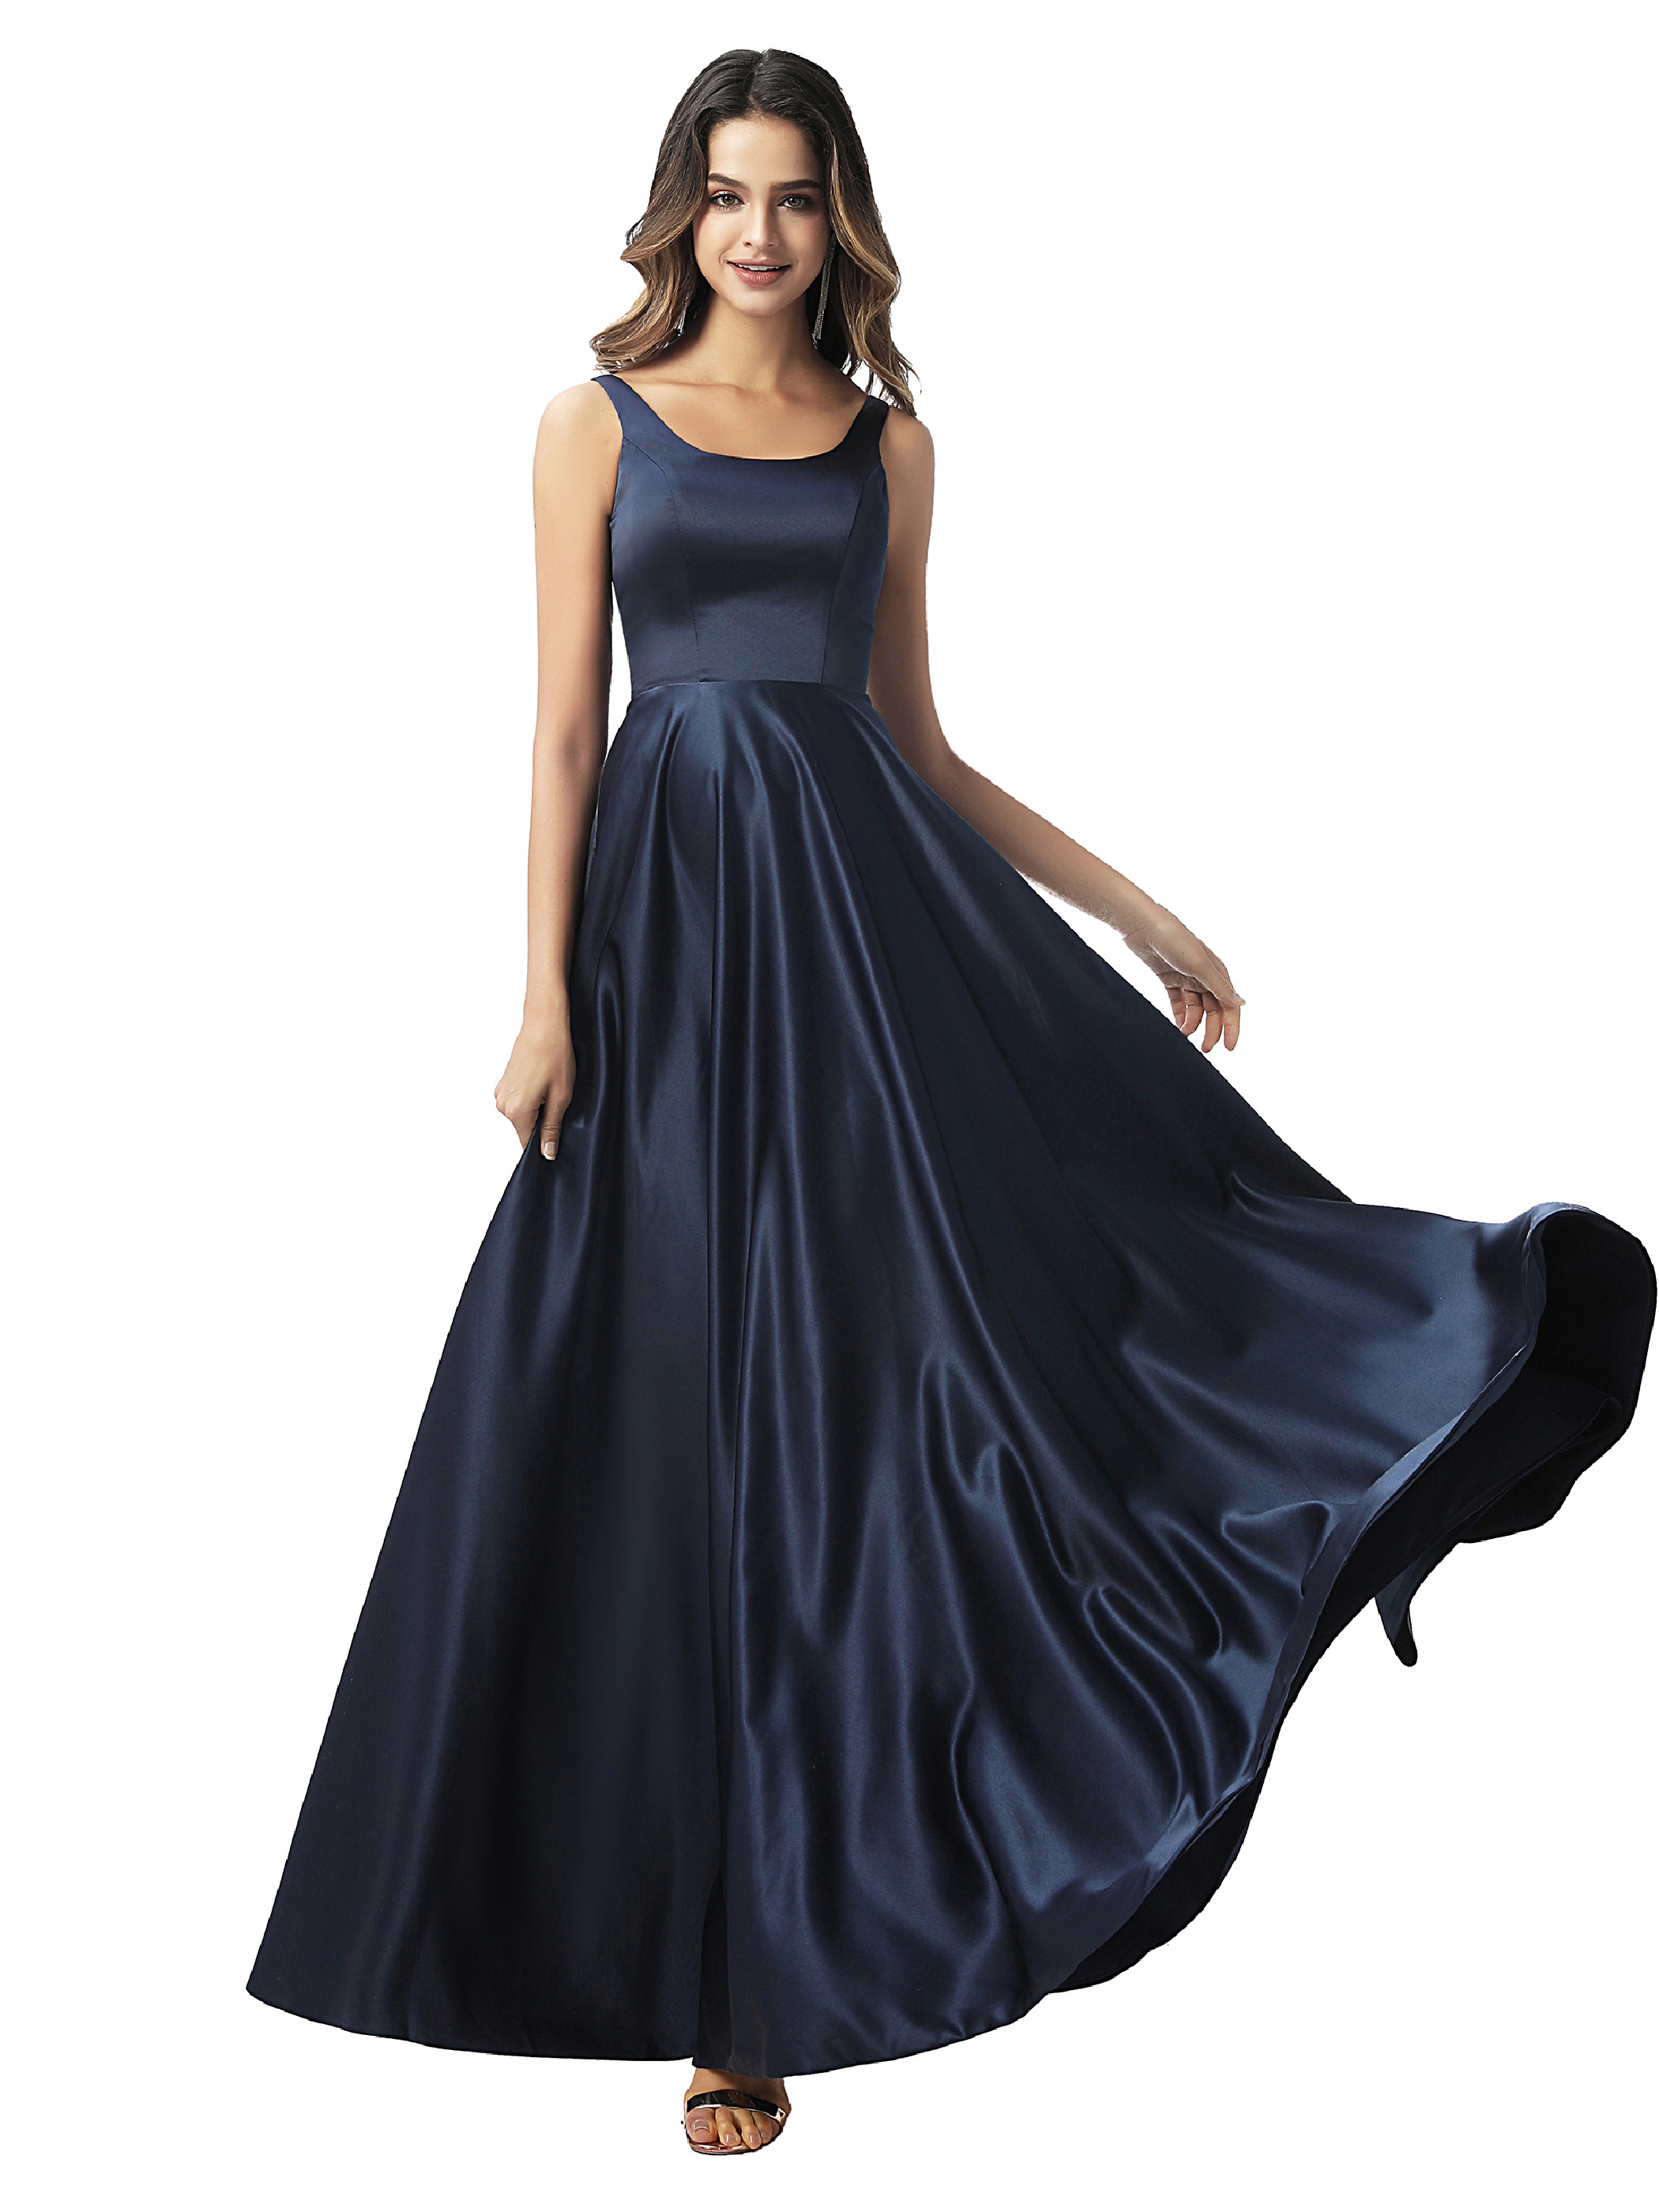 Online Cheap Prom Dresses, Plus Size Party Dresses - Ericdress.com